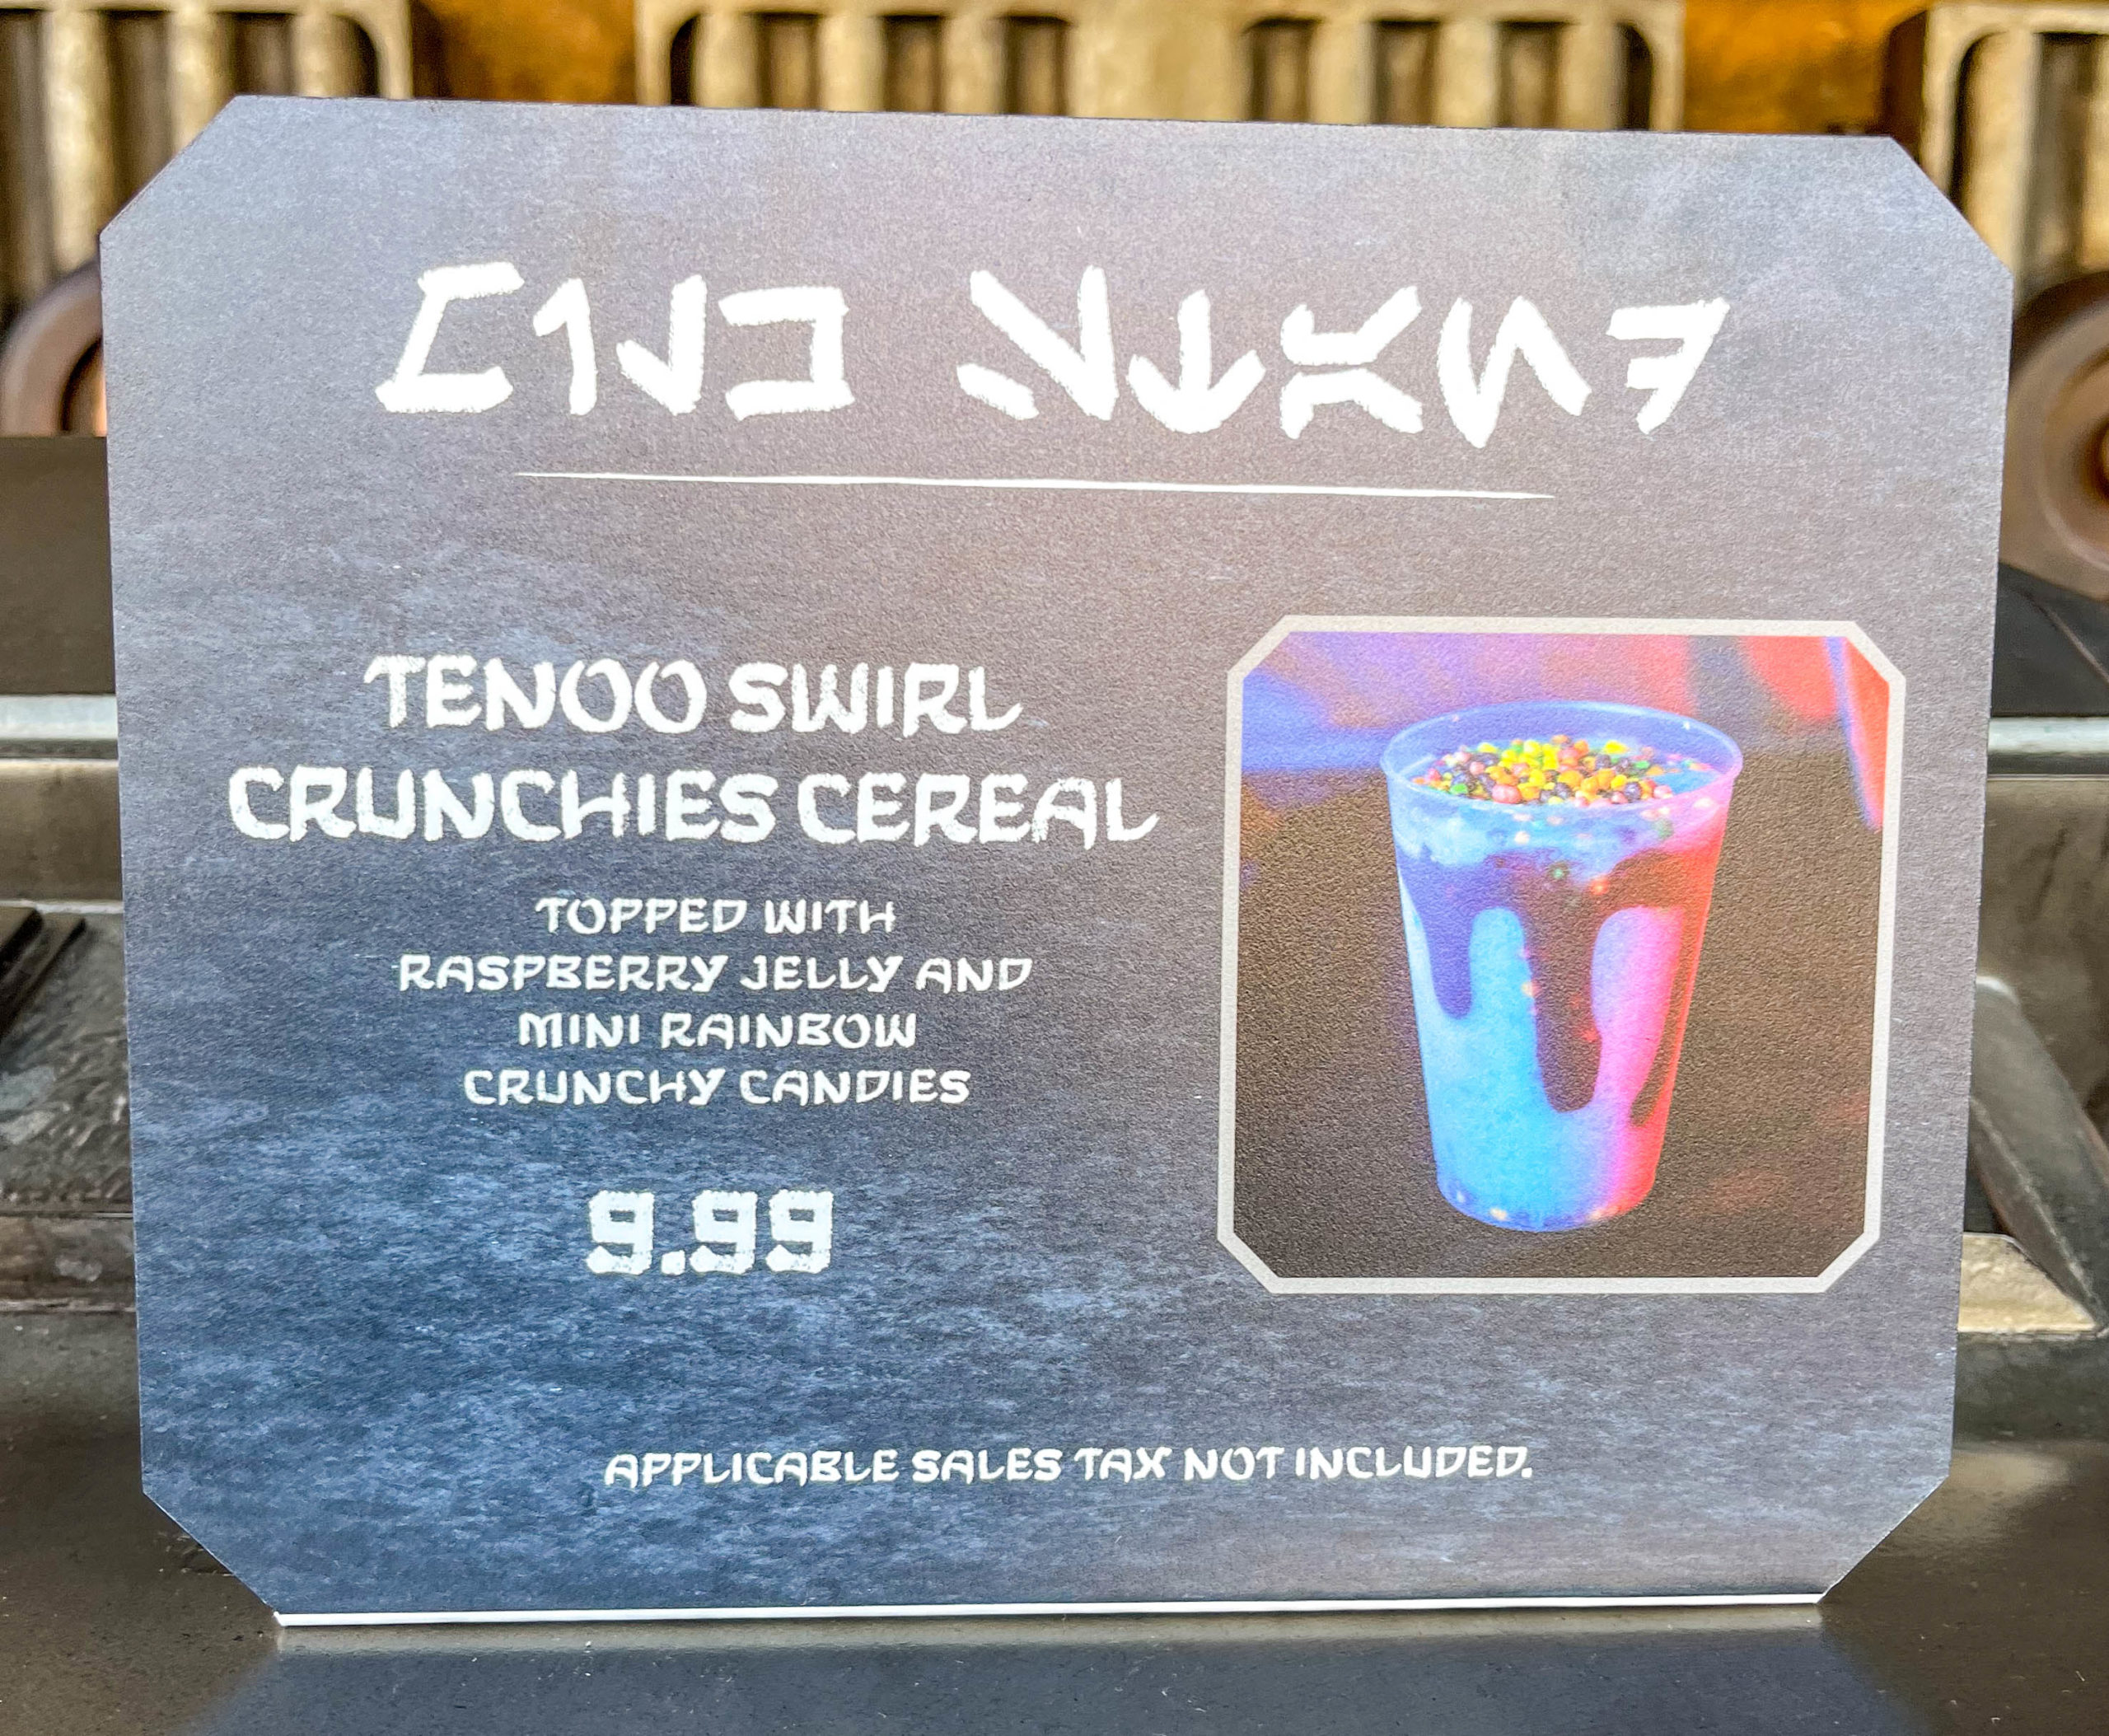 Tenoo Swirl Crunchies Cereal